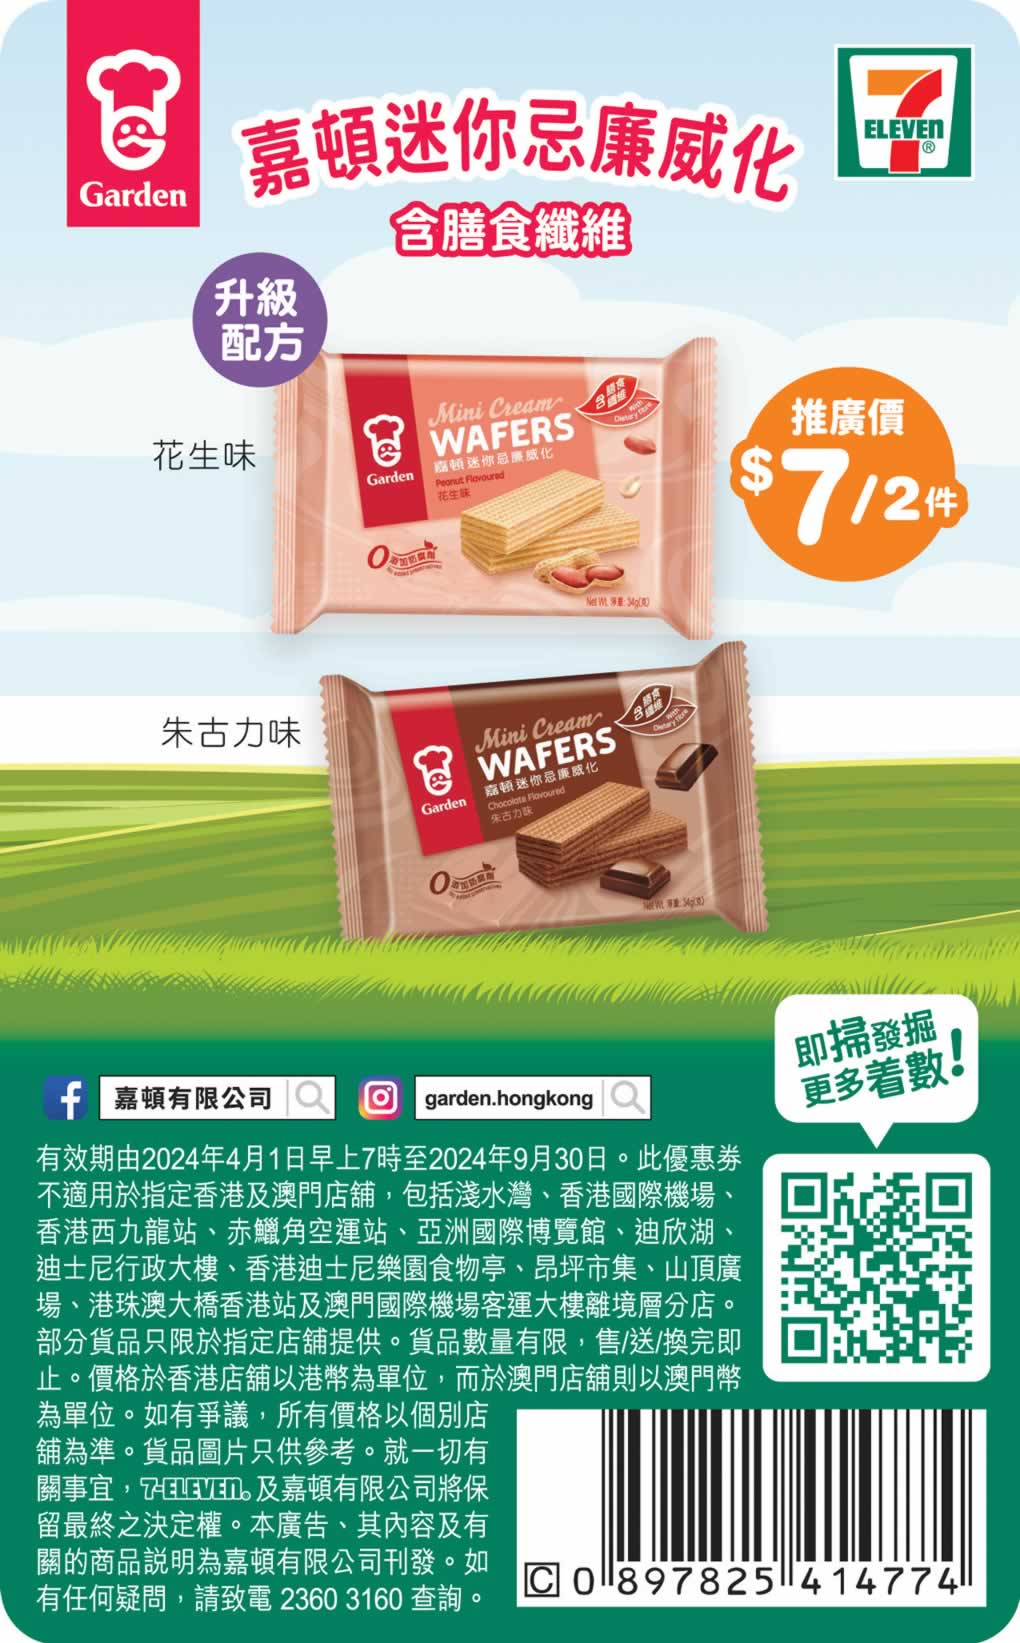 Garden 嘉頓：全線餅乾產品加多1包優惠@惠康(4月22日更新)圖片7